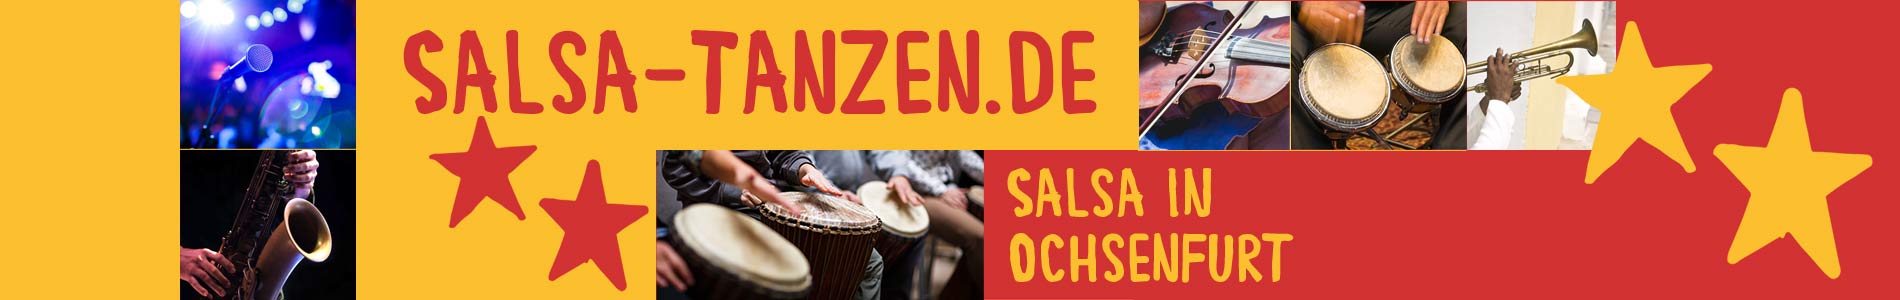 Salsa in Ochsenfurt – Salsa lernen und tanzen, Tanzkurse, Partys, Veranstaltungen